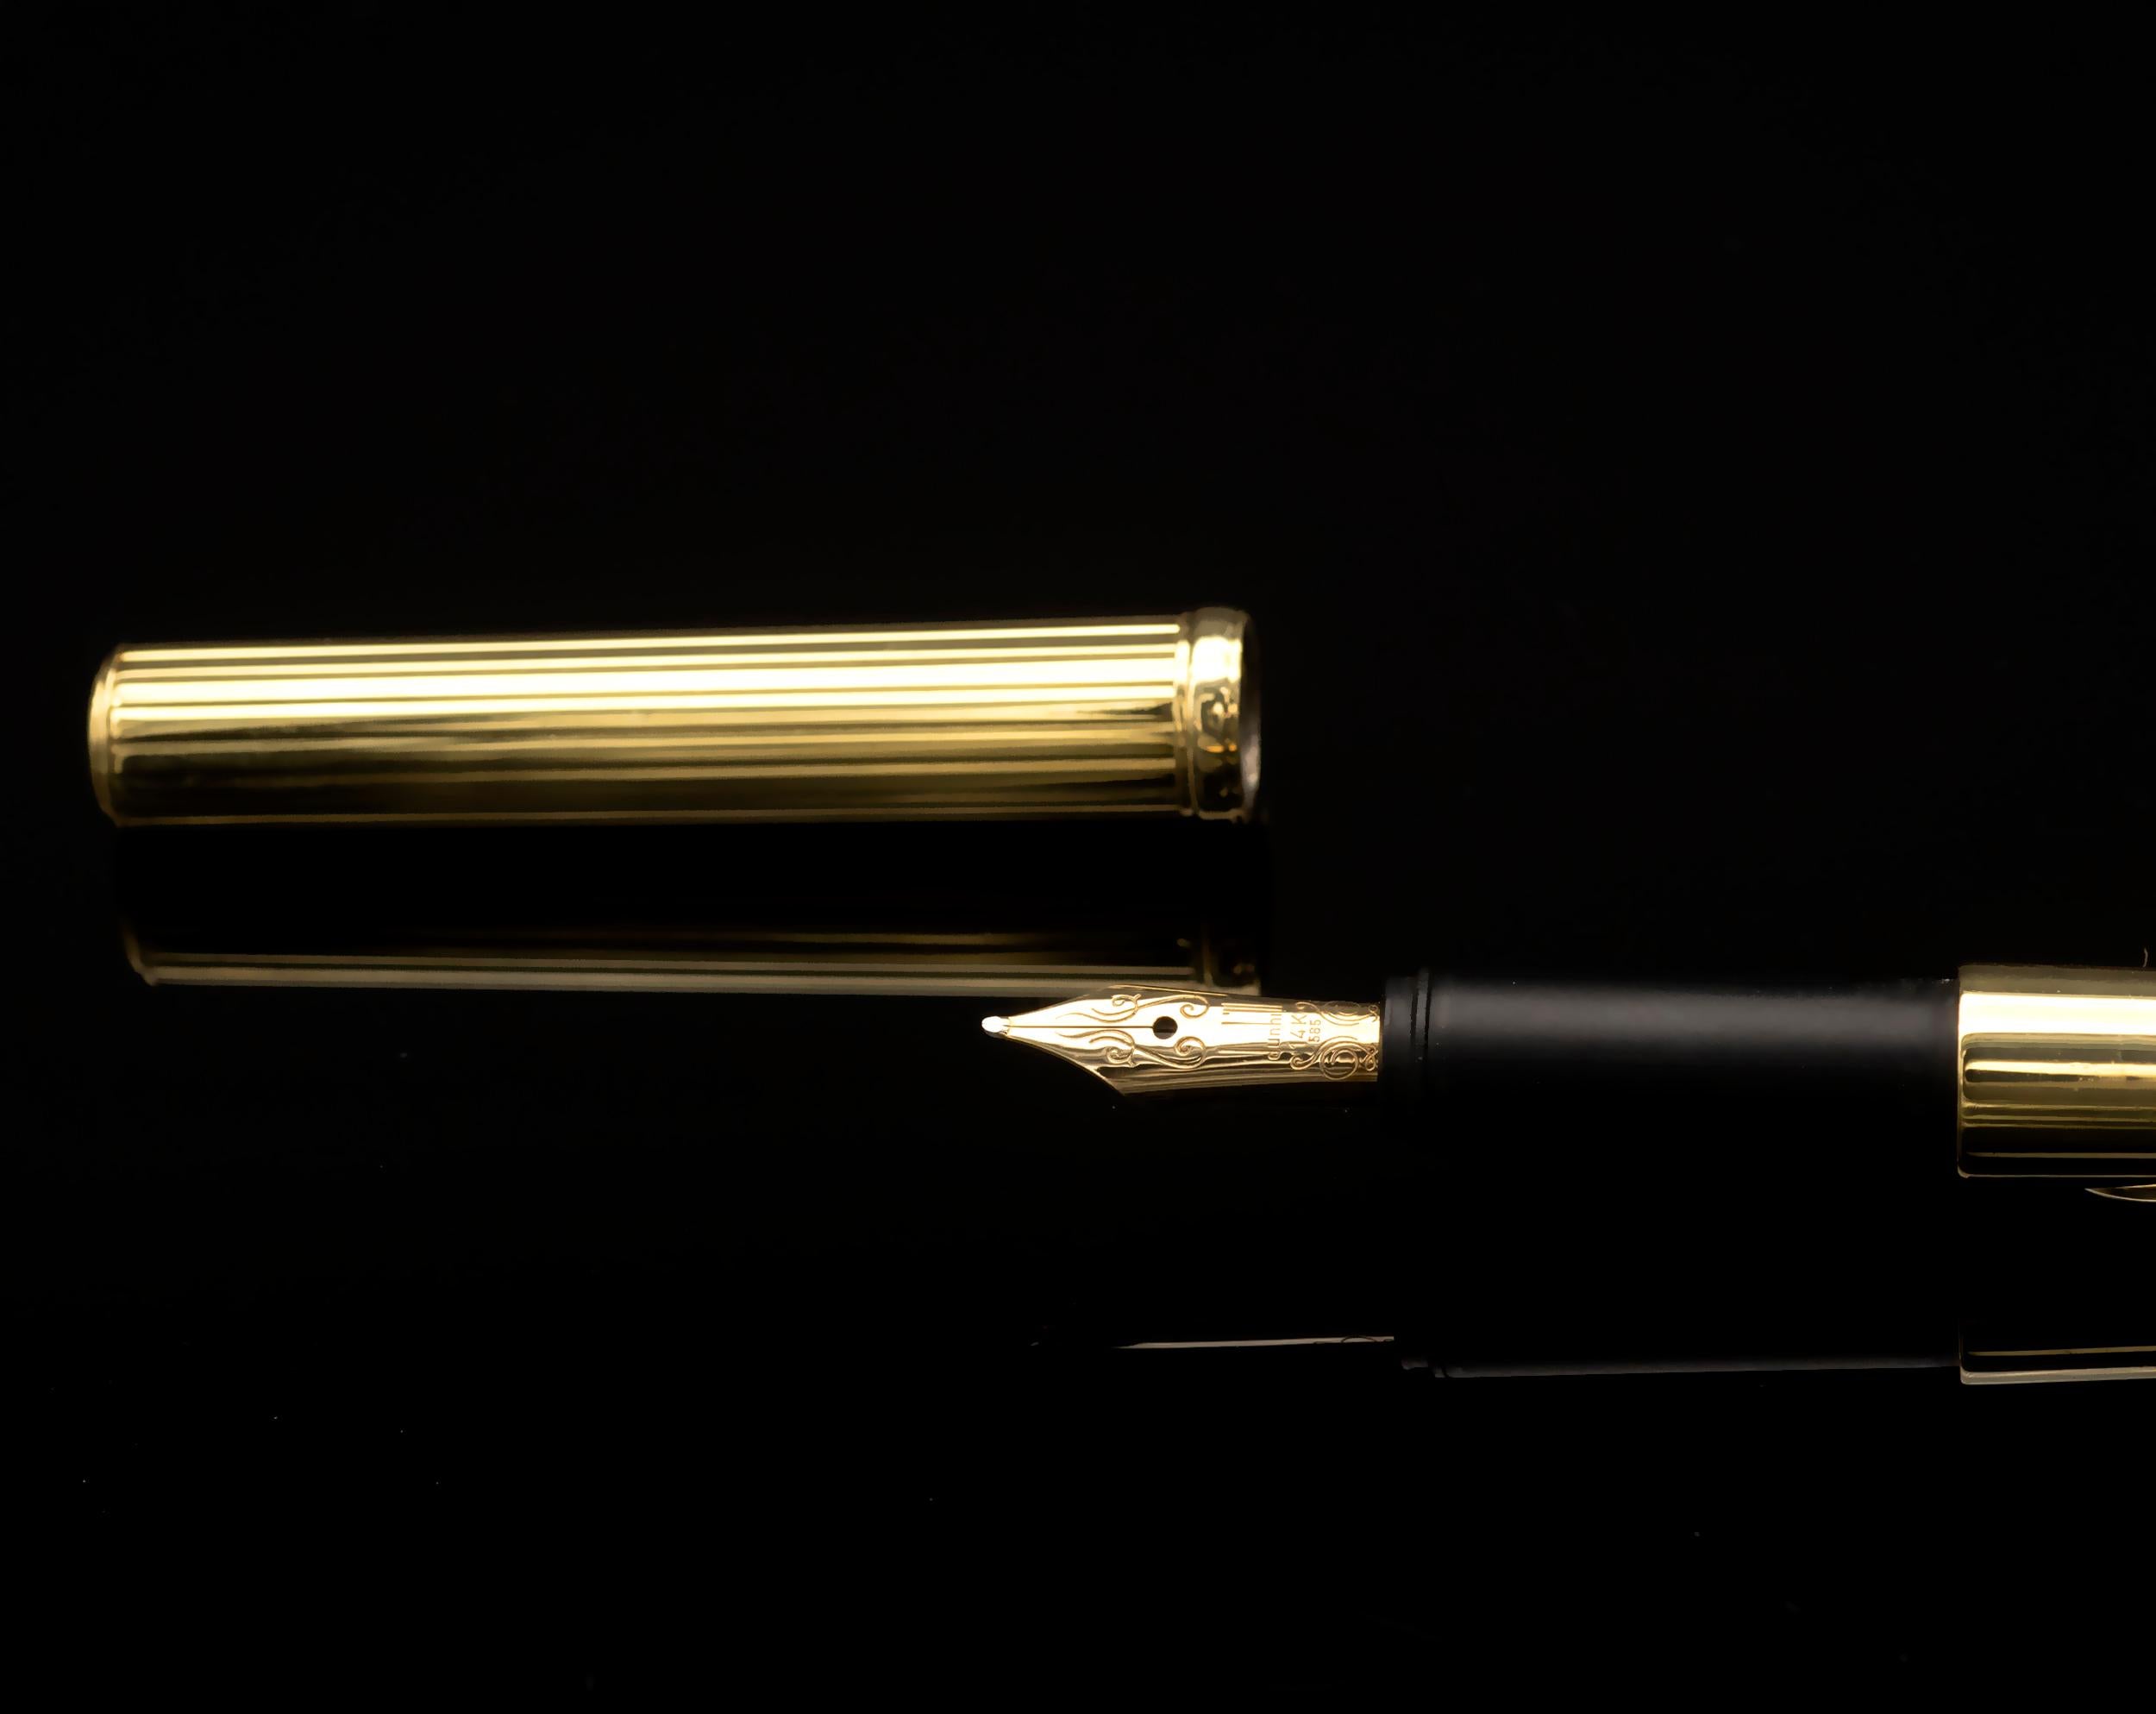 Außergewöhnlicher Dunhill Kugelschreiber aus massivem 18-karätigem Gelbgold, in dessen Mitte eine Reihe von Diamanten auf Weißgold gefasst ist. Die Dunhill-Feder ist aus 14 kt Gold. 
Unglaublich raffiniertes Design und hervorragende handwerkliche